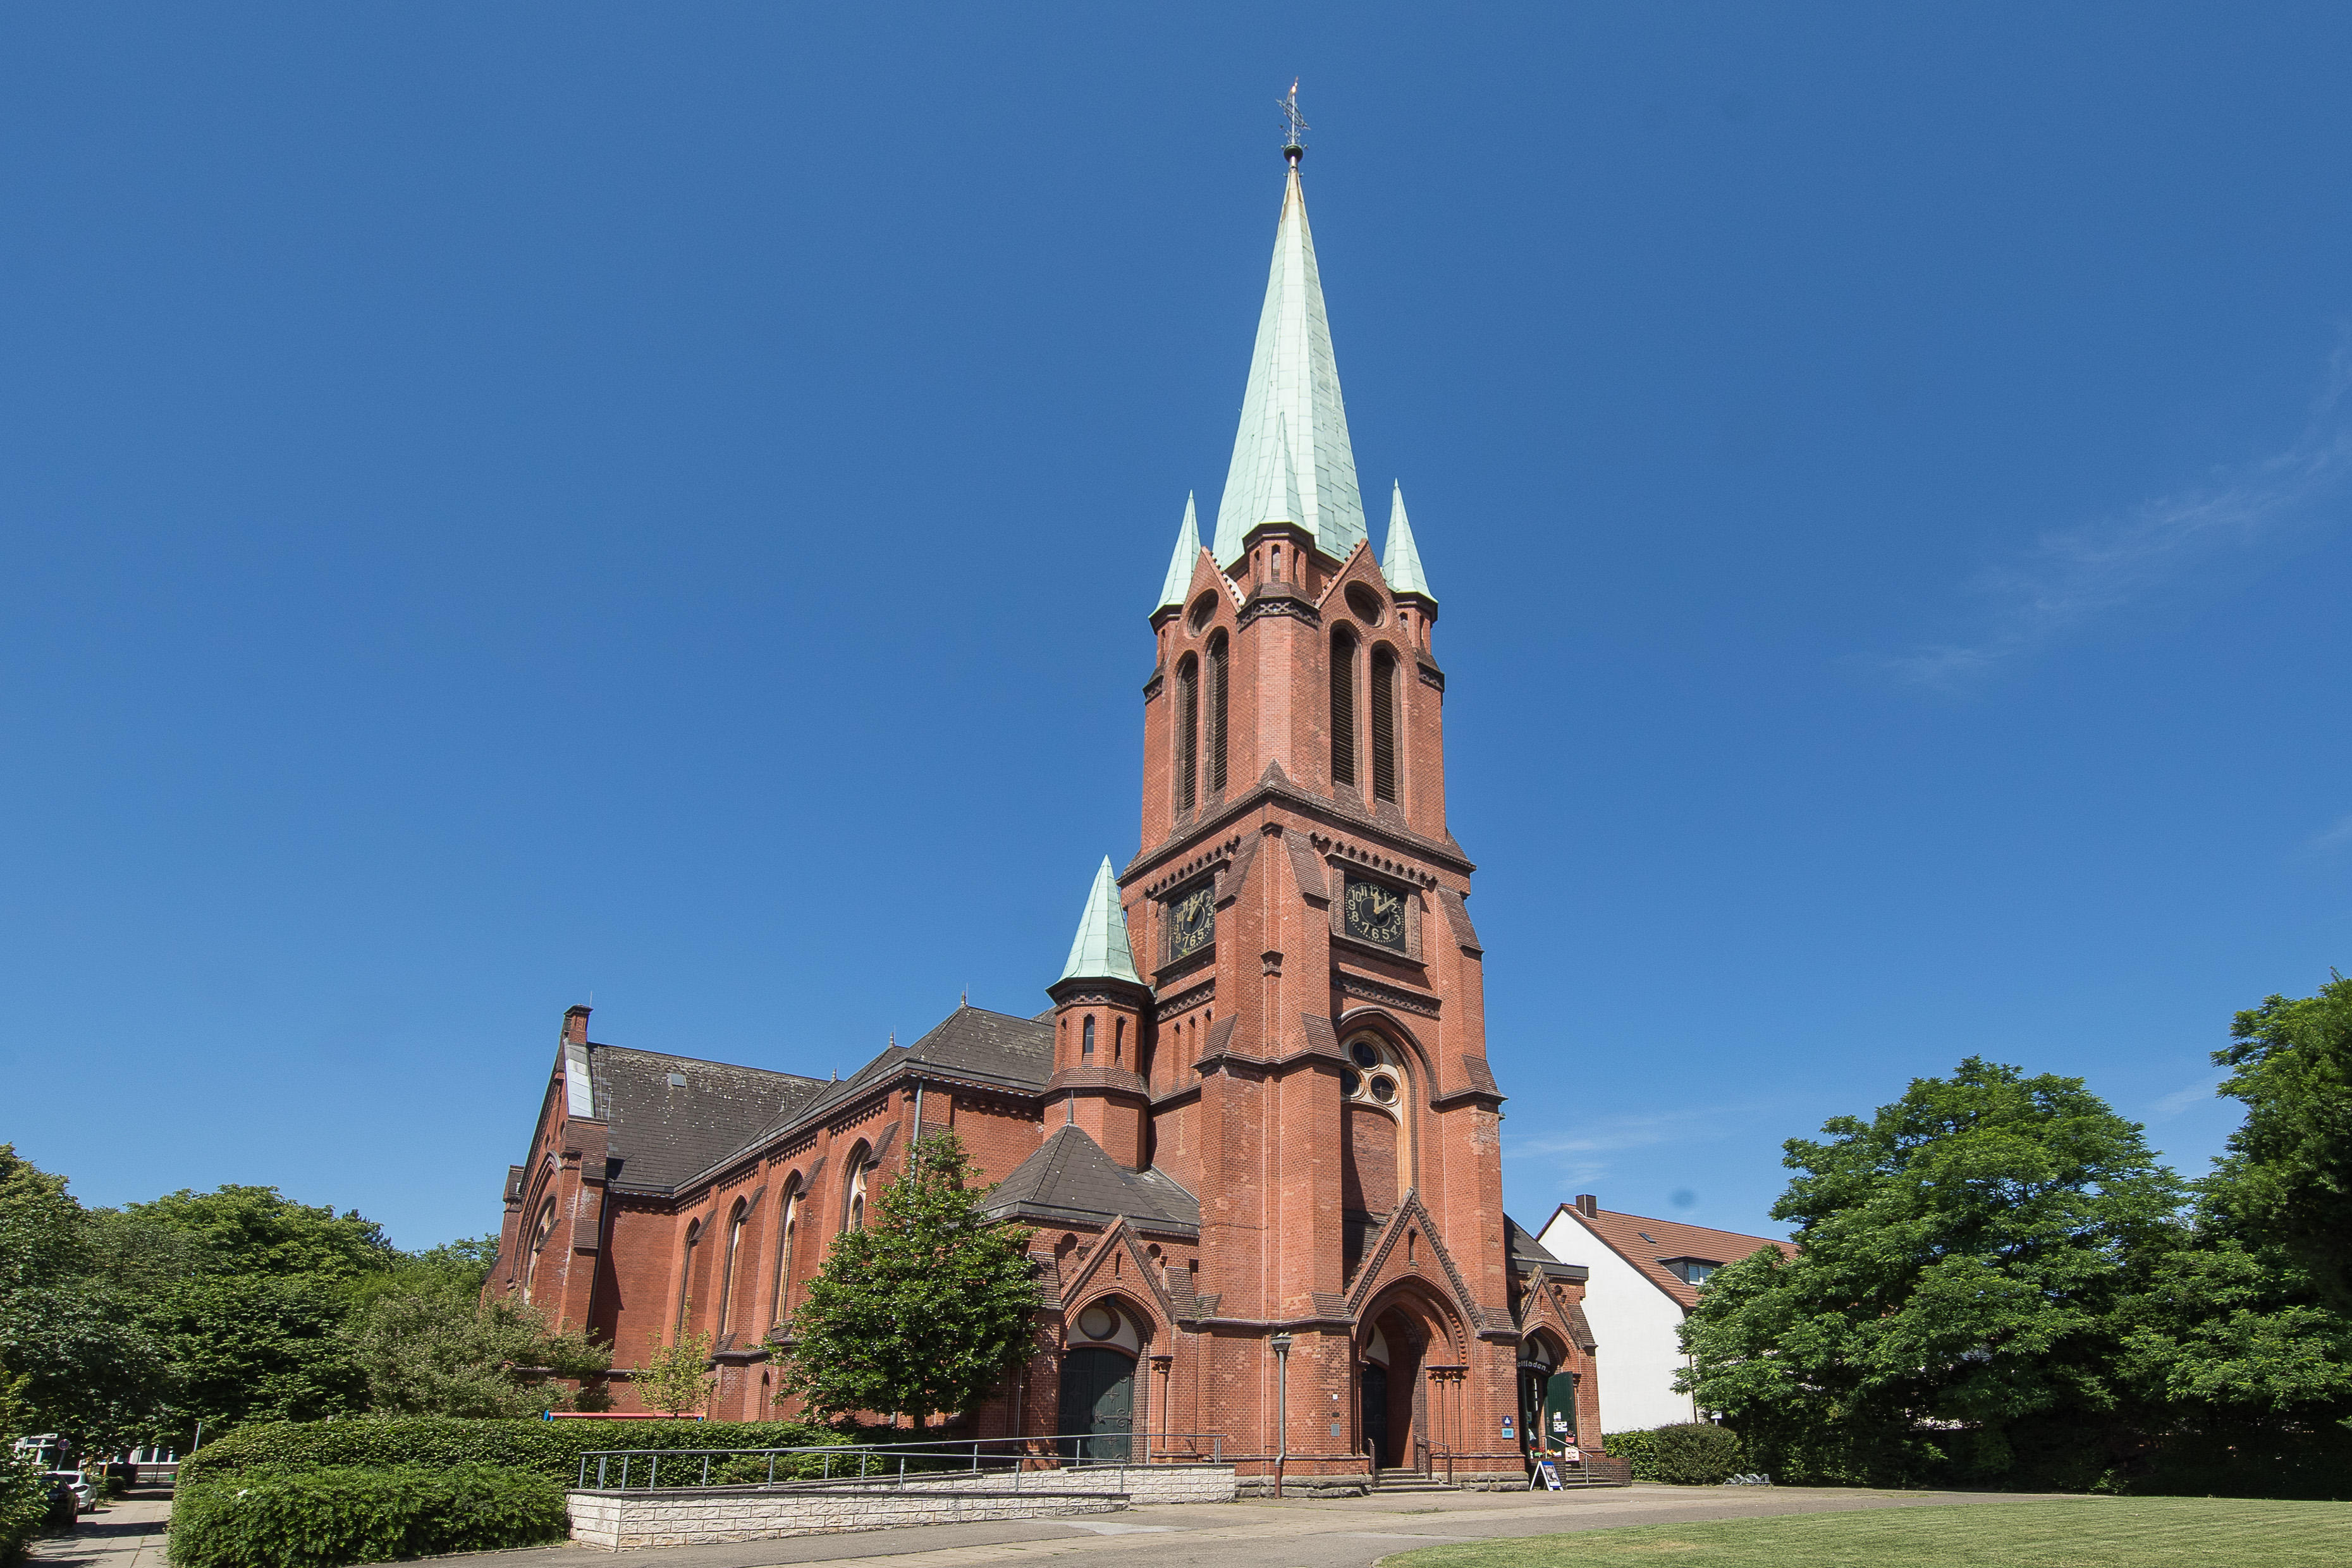 Bild der Alte Kirche Altenessen - Evangelischen Kirchengemeinde Altenessen-Karnap